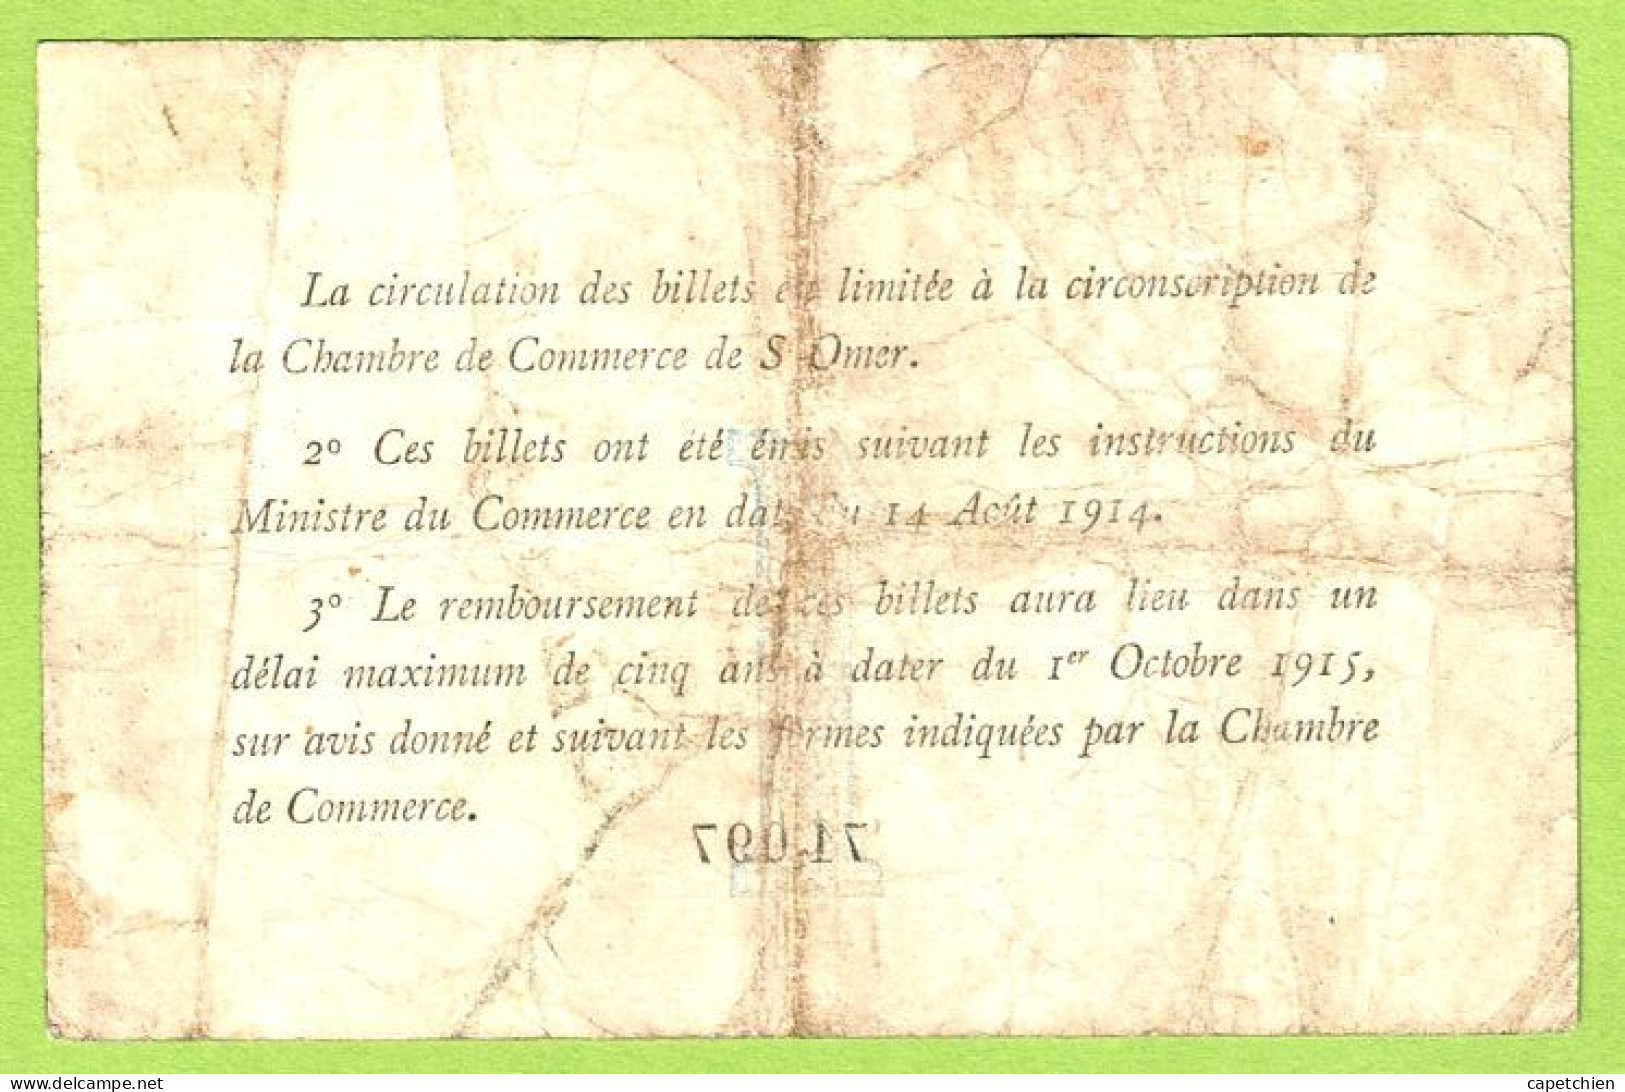 FRANCE / CHAMBRE De COMMERCE / SAINT OMER / 1 FRANC / 14 AOUT 1914 / PAS De N° De SERIE  / N° 71097 - Chamber Of Commerce